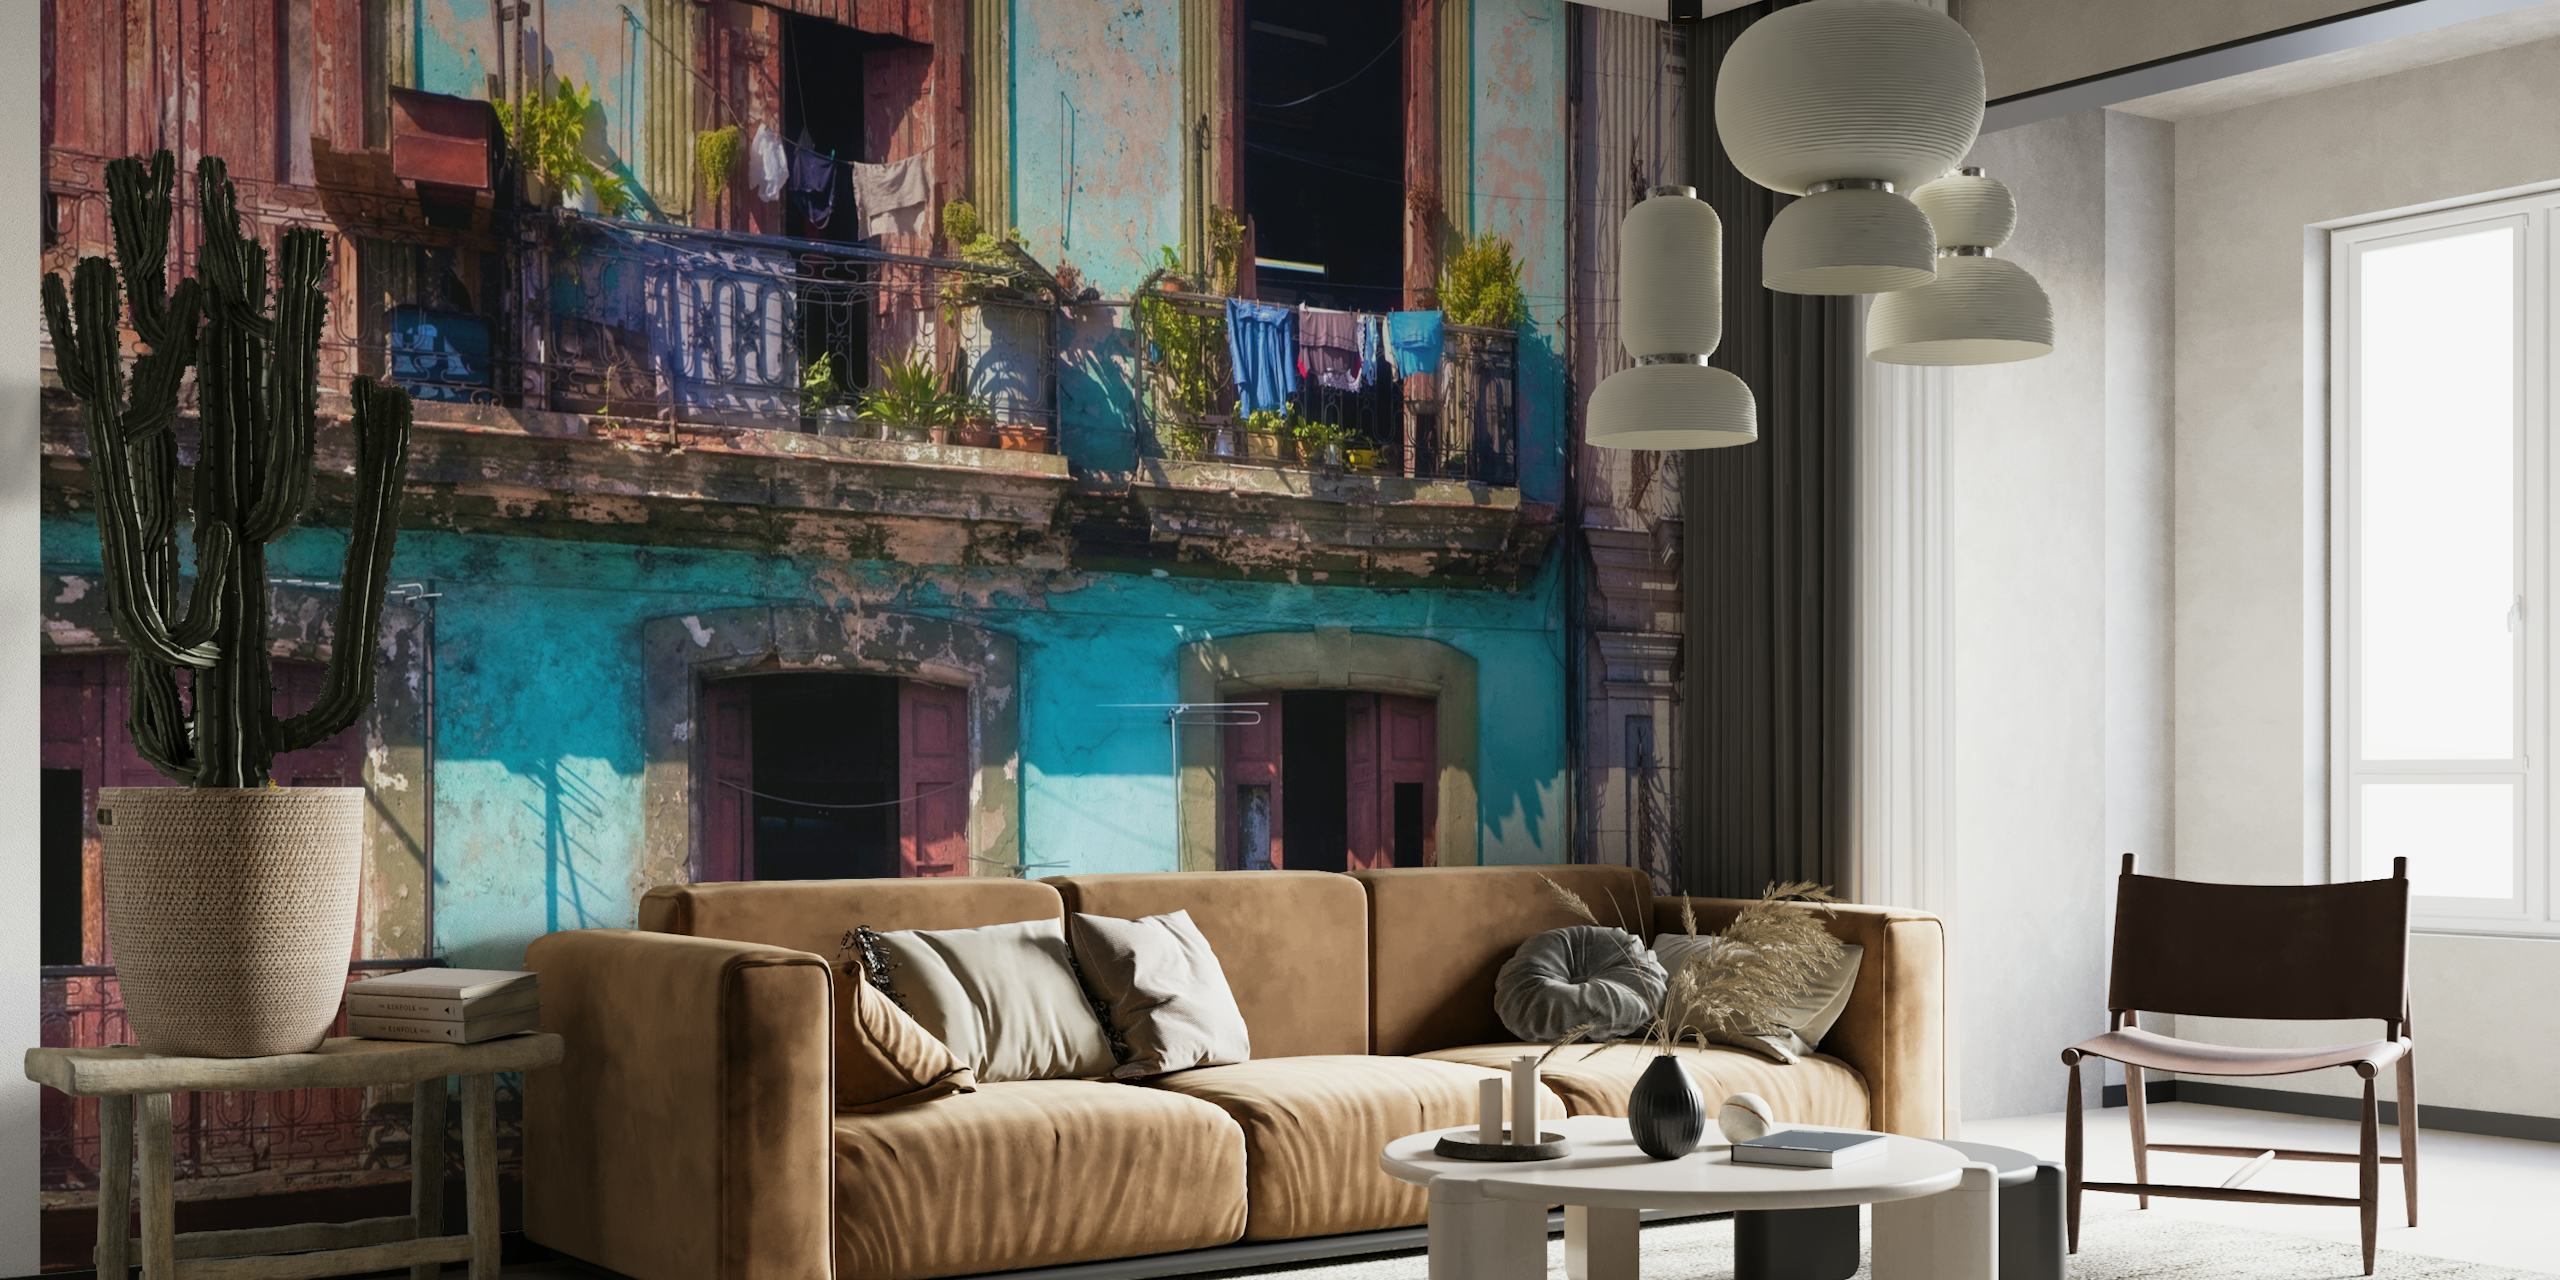 Farbenfrohe Gebäudefassade im Bohème-Stil mit Pflanzen und Wandgemälde zum Aufhängen von Wäsche